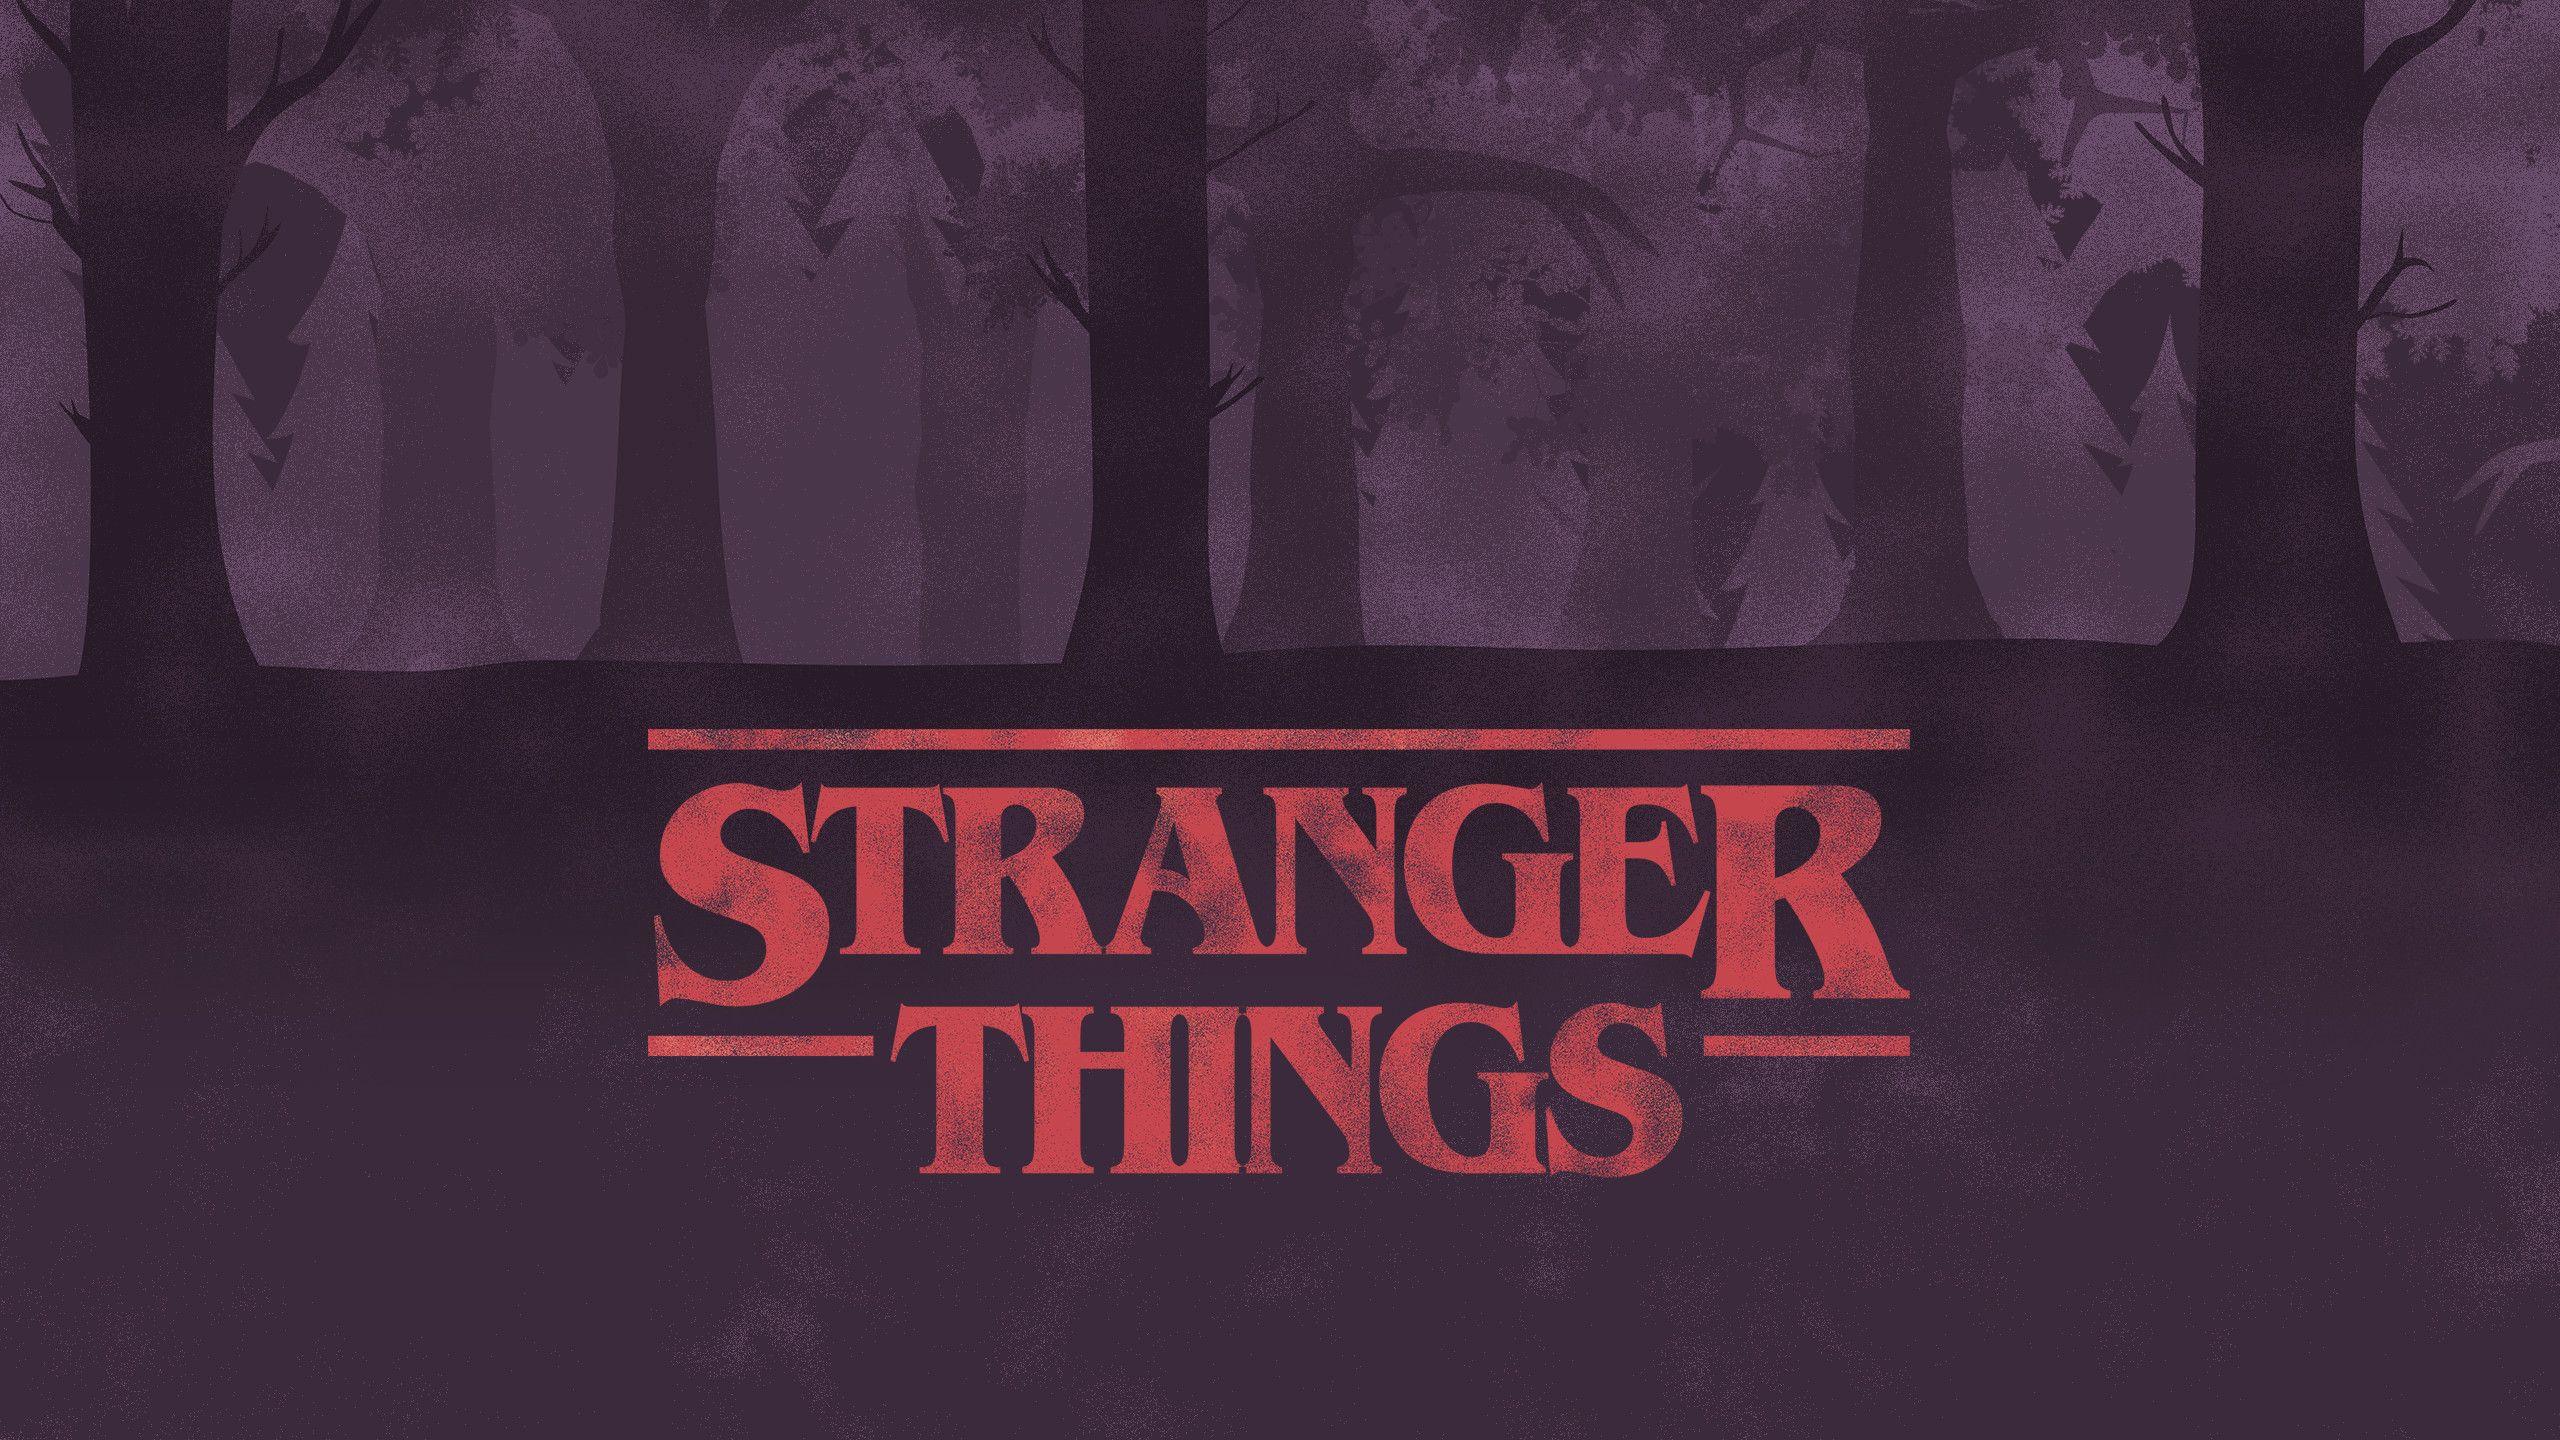 Stranger Things Aesthetic Laptop Wallpaper Free Stranger